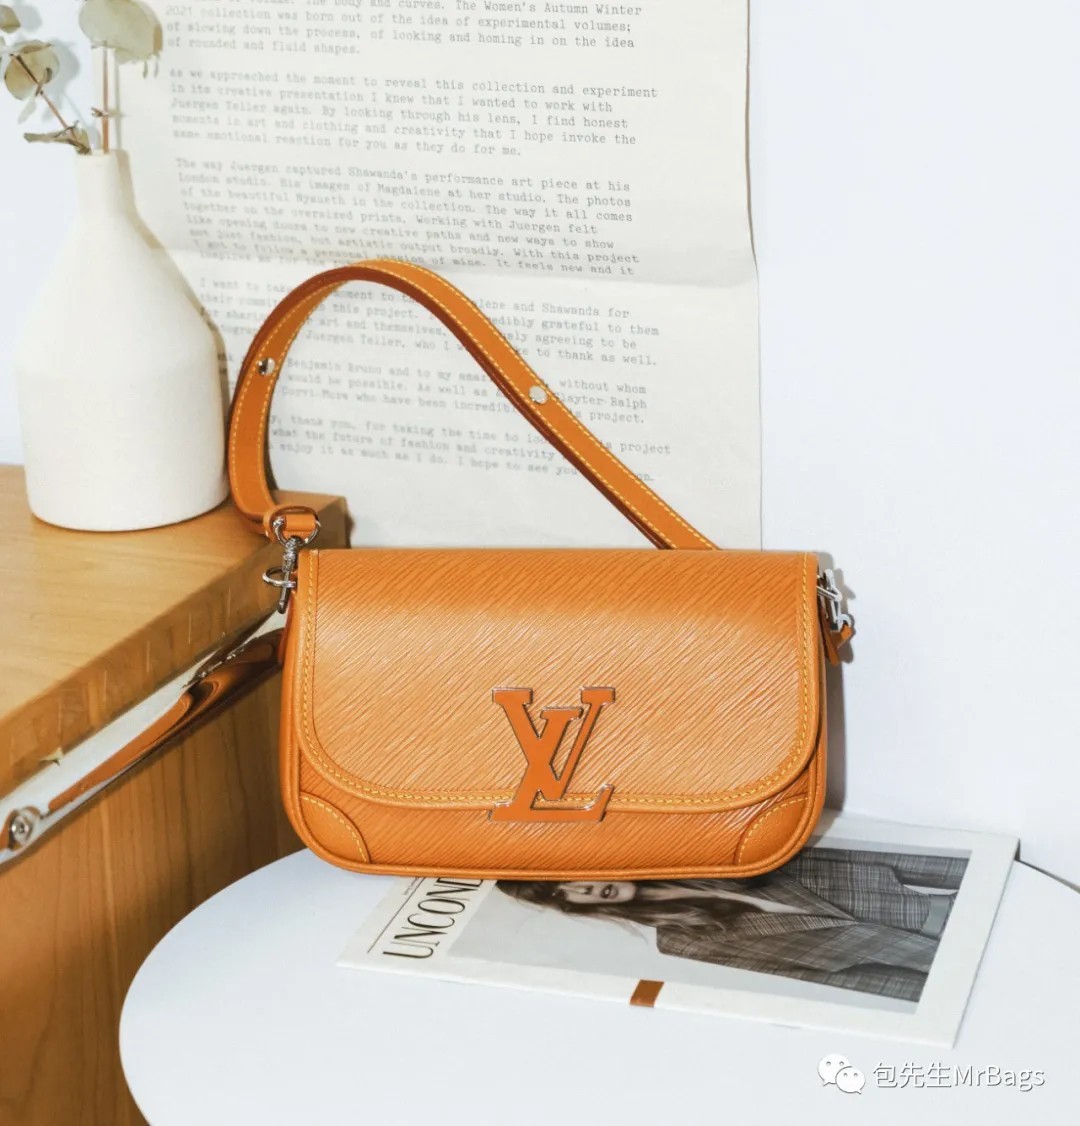 Top 12 najbardziej godnych zakupu wysokiej jakości toreb projektanta replik (aktualizacja 2022)-najlepsza jakość fałszywe torebki Louis Vuitton sklep internetowy, torebka projektanta replik.